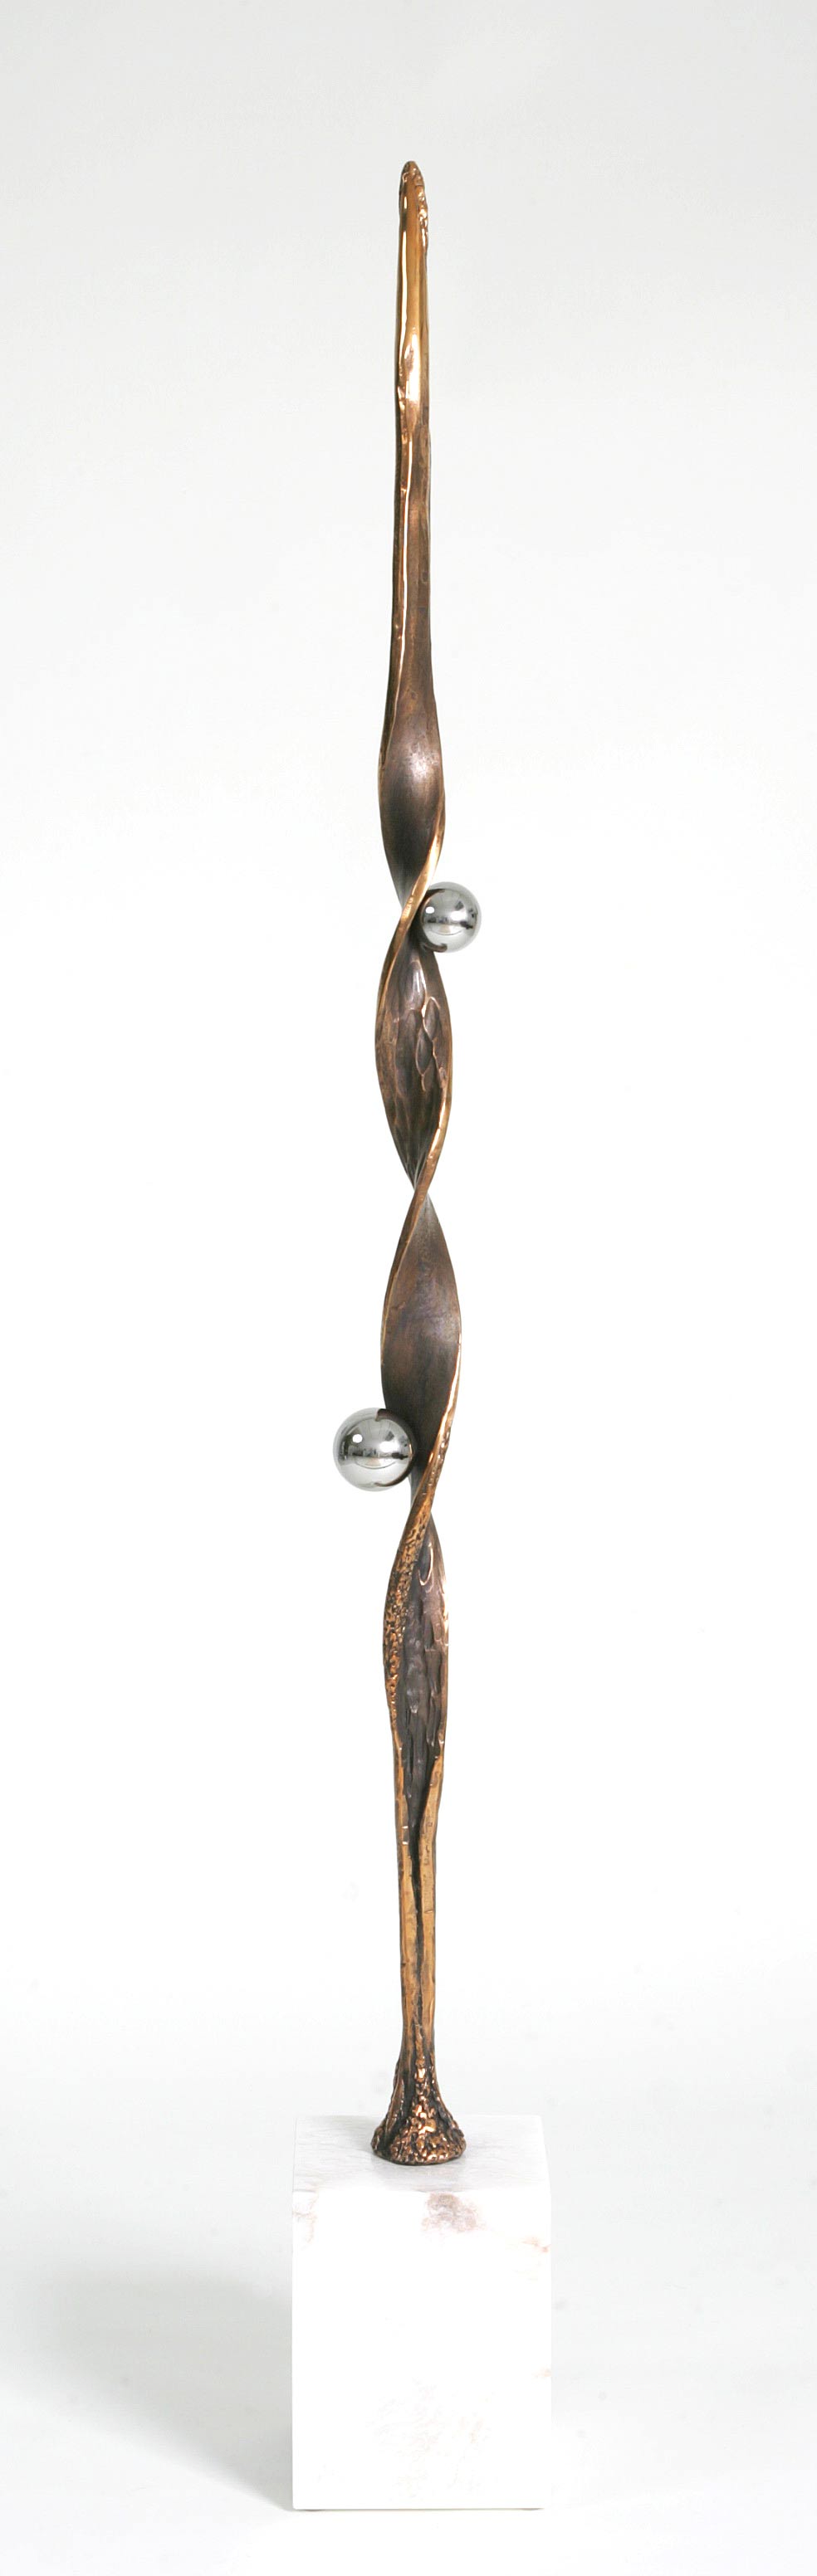 Kunstguss Bronze auf Alabaster - Preis: CHF 17'500.00